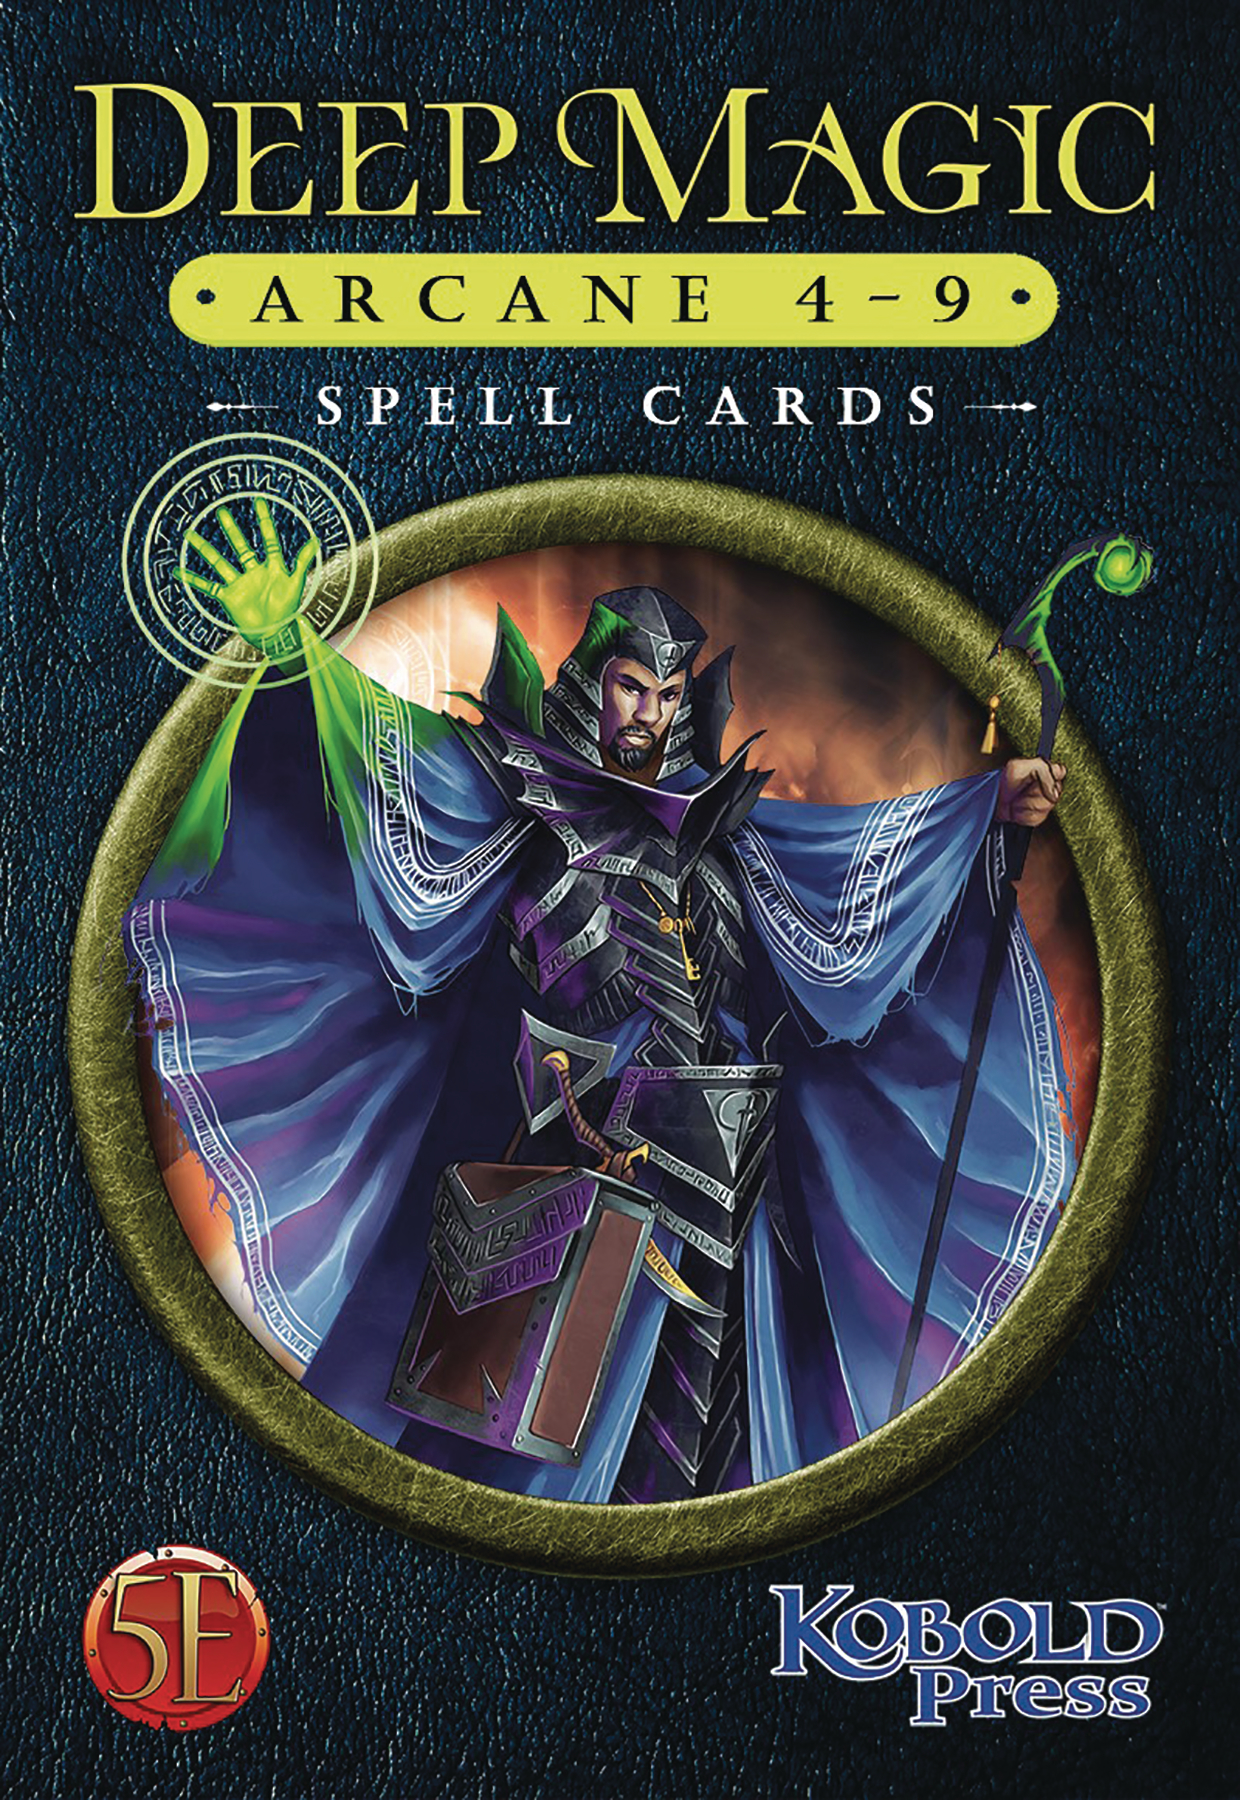 Deep Magic Spell Cards Arcane 4-9